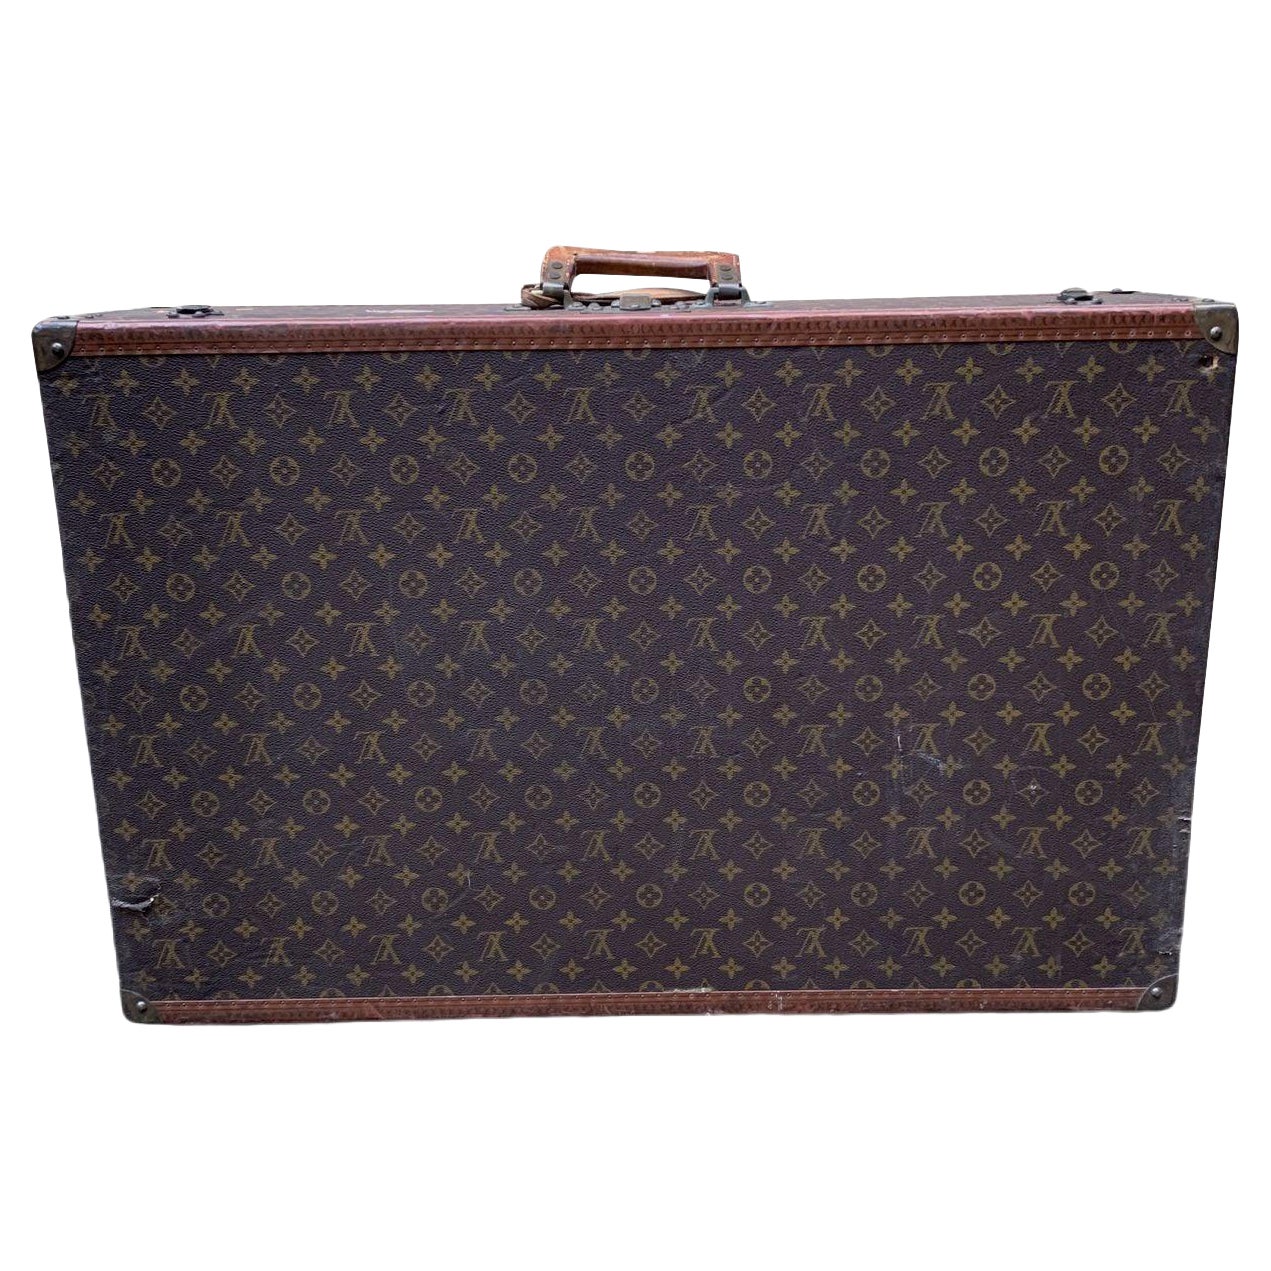 Louis Vuitton Vintage Monogram Canvas Braken 80 Large Luggage Bag